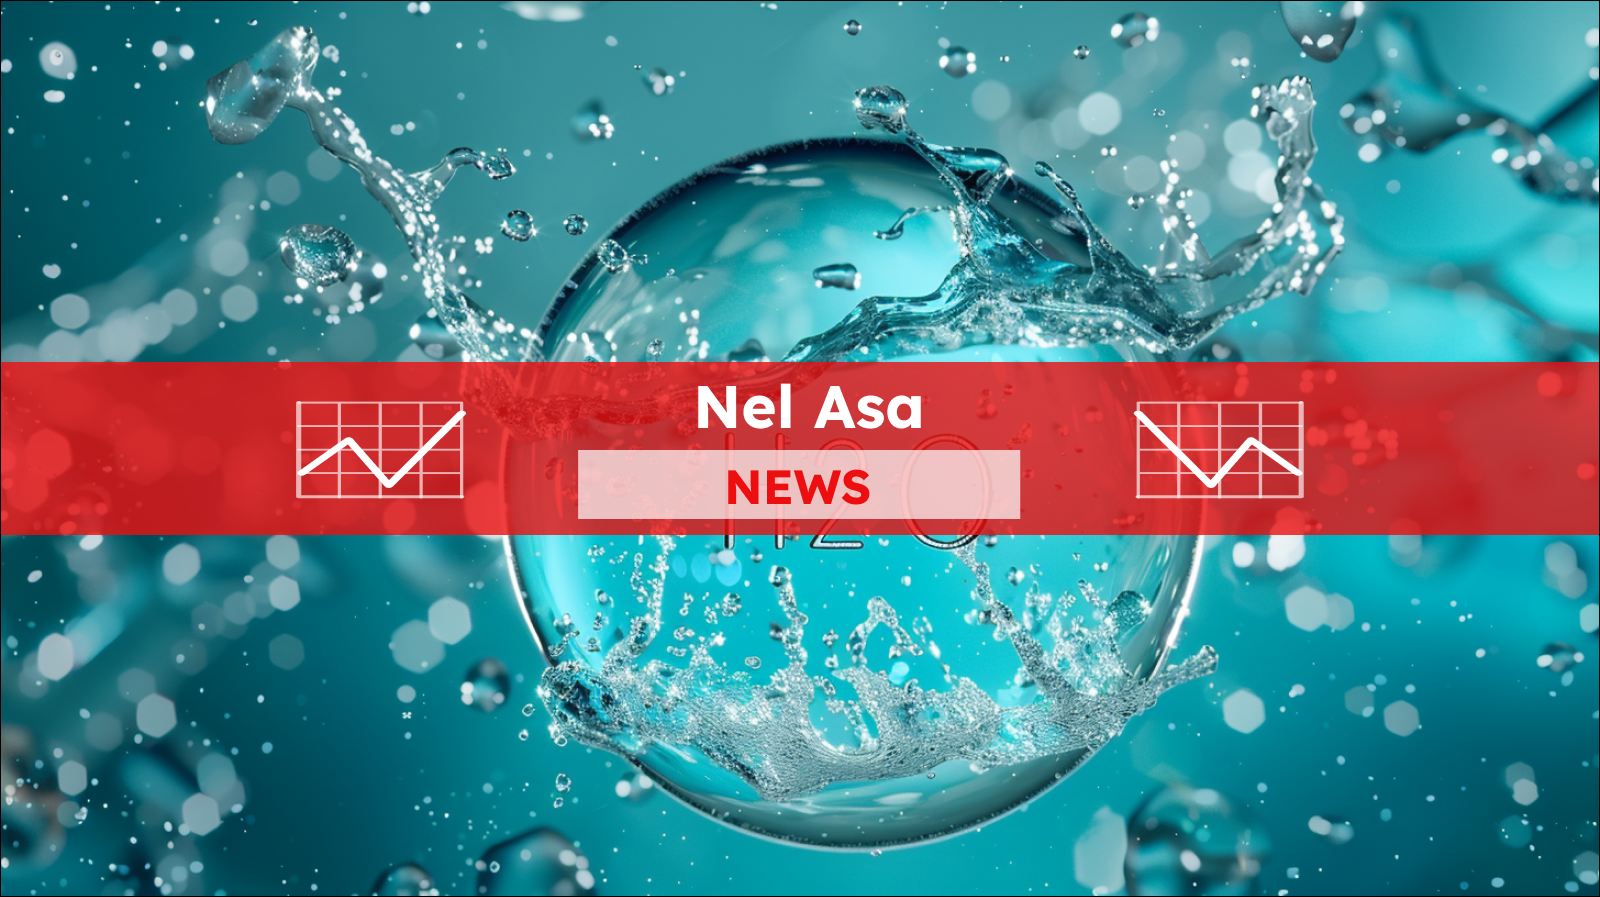 ein kreisförmiges Emblem mit der chemischen Formel H2O, umgeben von spritzendem Wasser, mit einem Nel ASA NEW-Banner